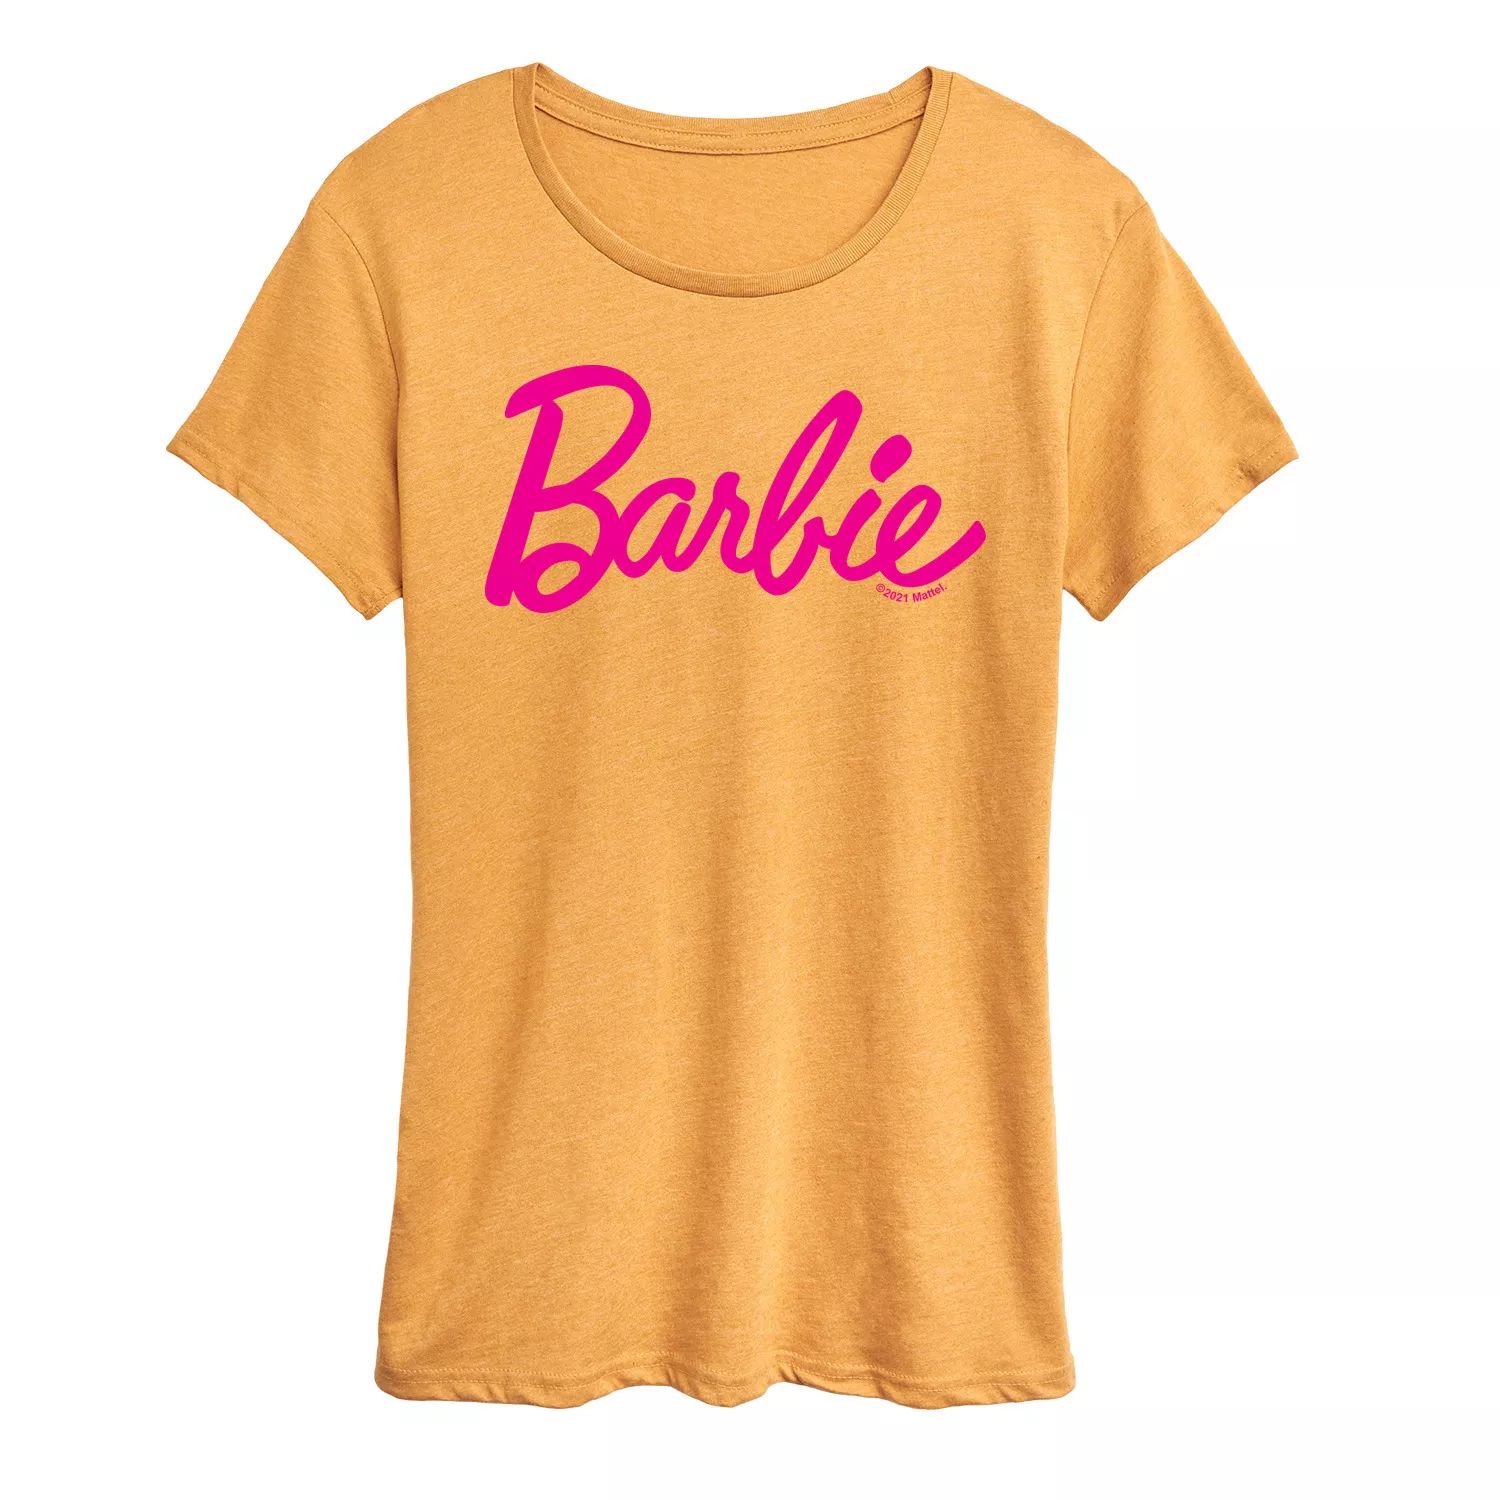 Классическая футболка с логотипом Barbie для юниоров Licensed Character классическая футболка с логотипом barbie для юниоров licensed character